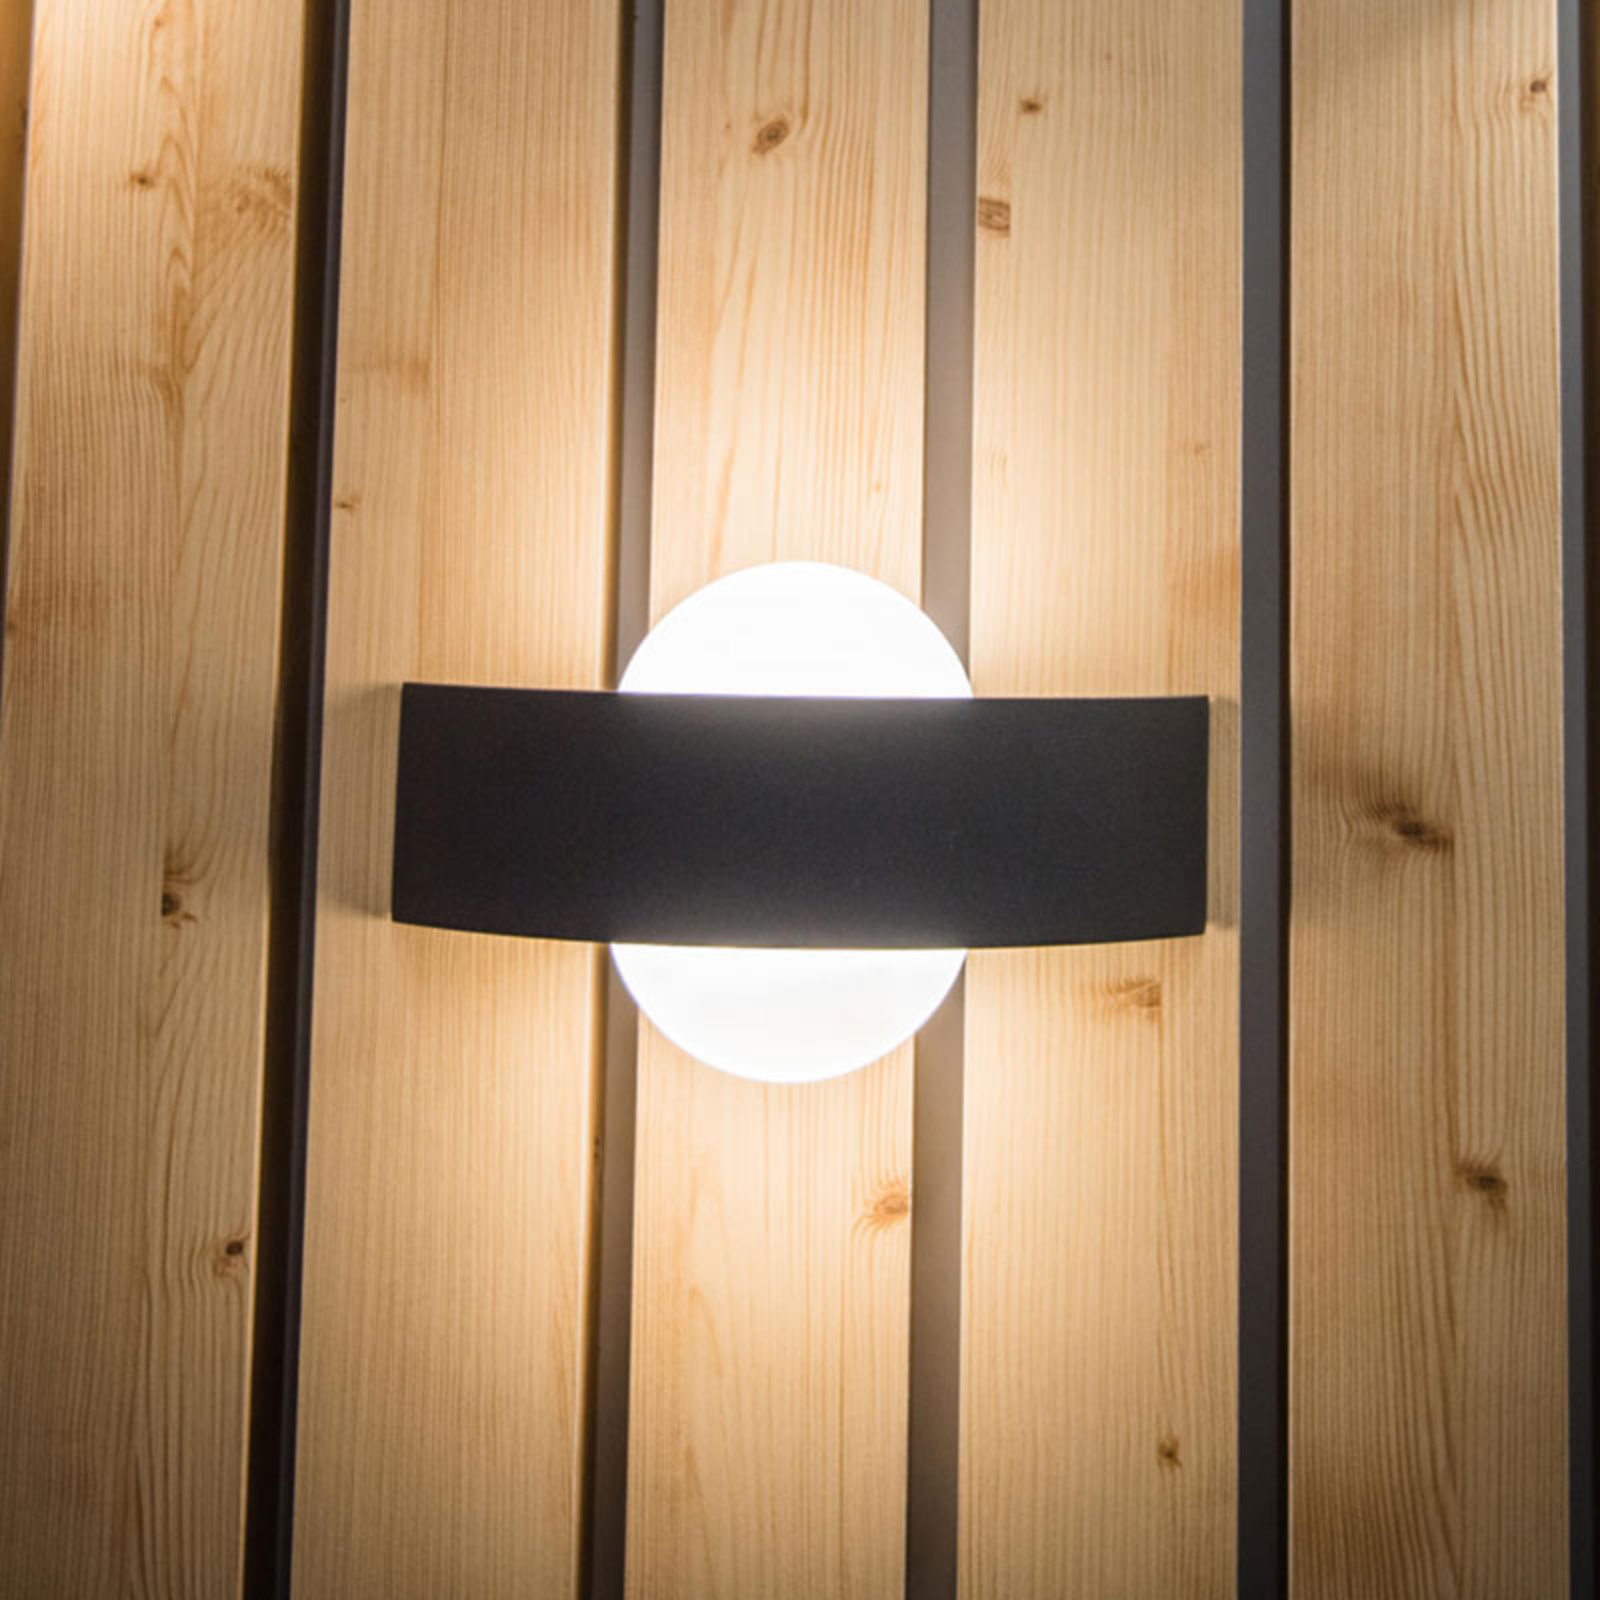 LEDVANCE Endura Style Shield Round utendørs lampe